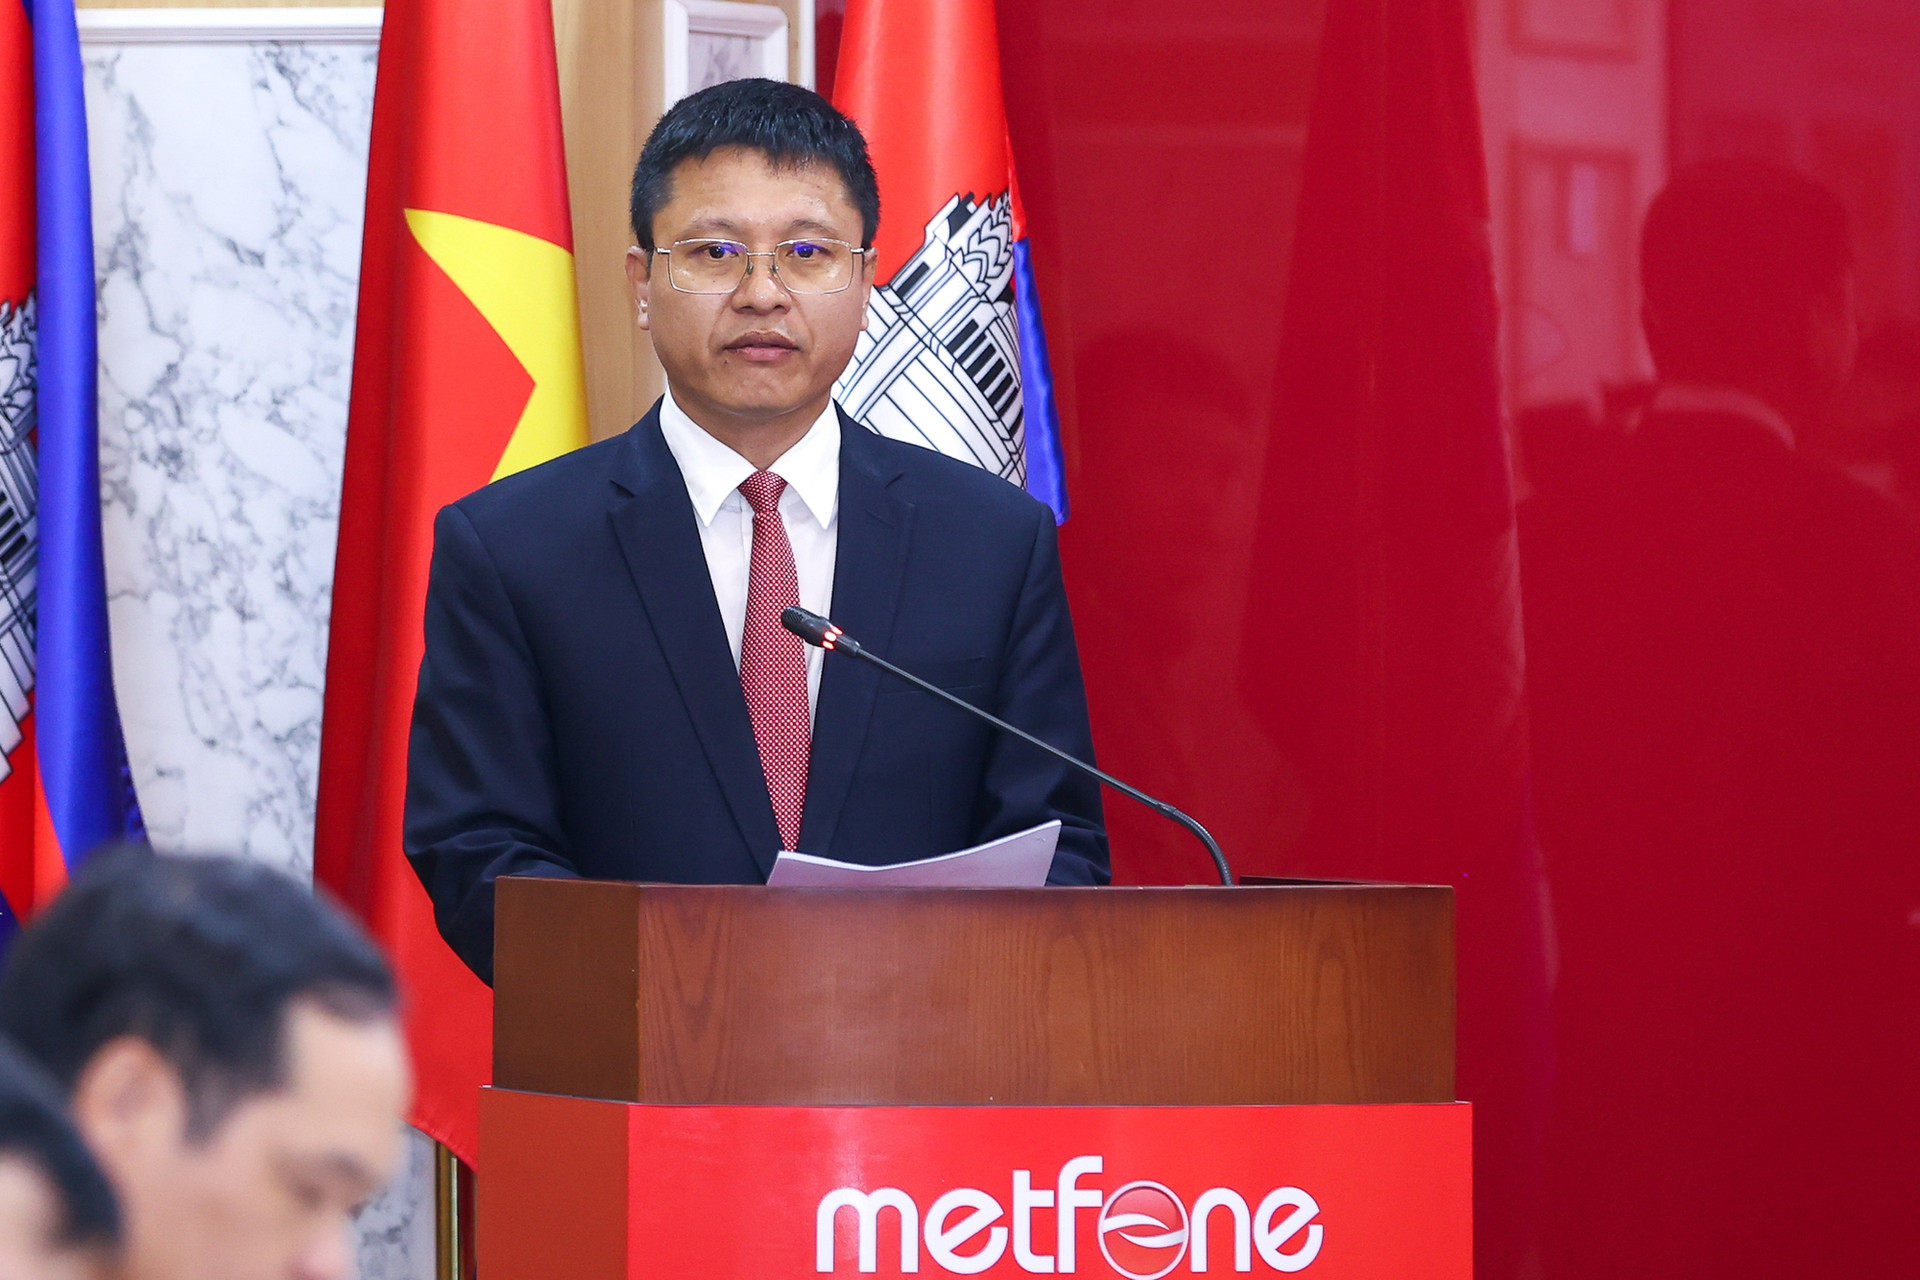 Thủ tướng thăm doanh nghiệp viễn thông lớn nhất Campuchia do Việt Nam đầu tư - Ảnh 3.